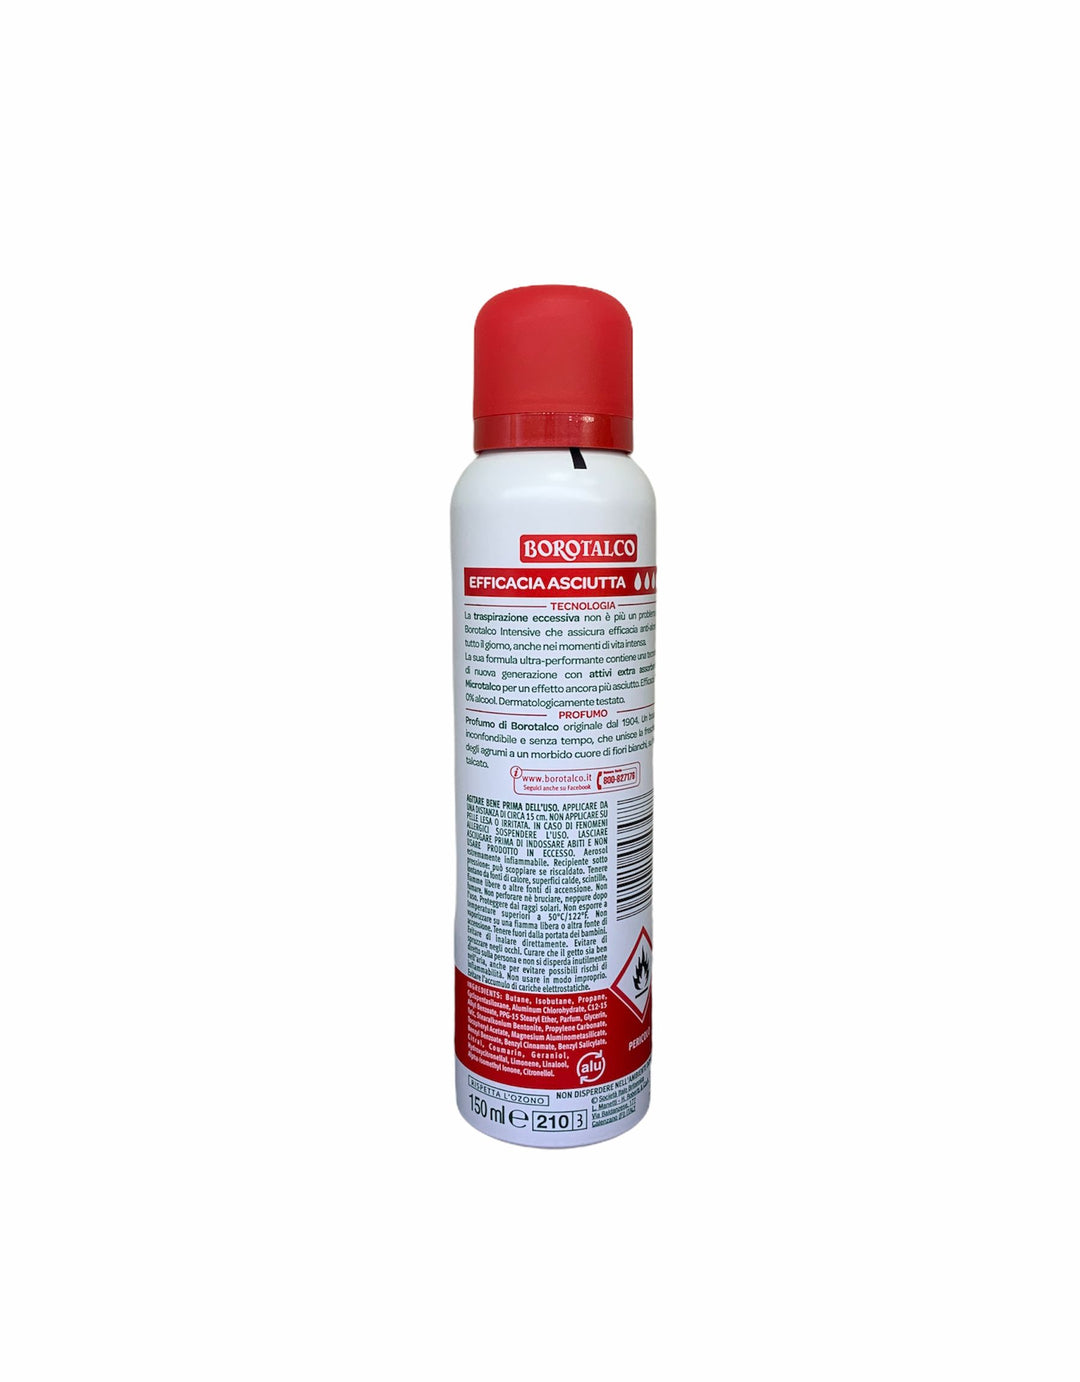 Borotalco deodorante spray intensive profumo di borotalco 150 ml